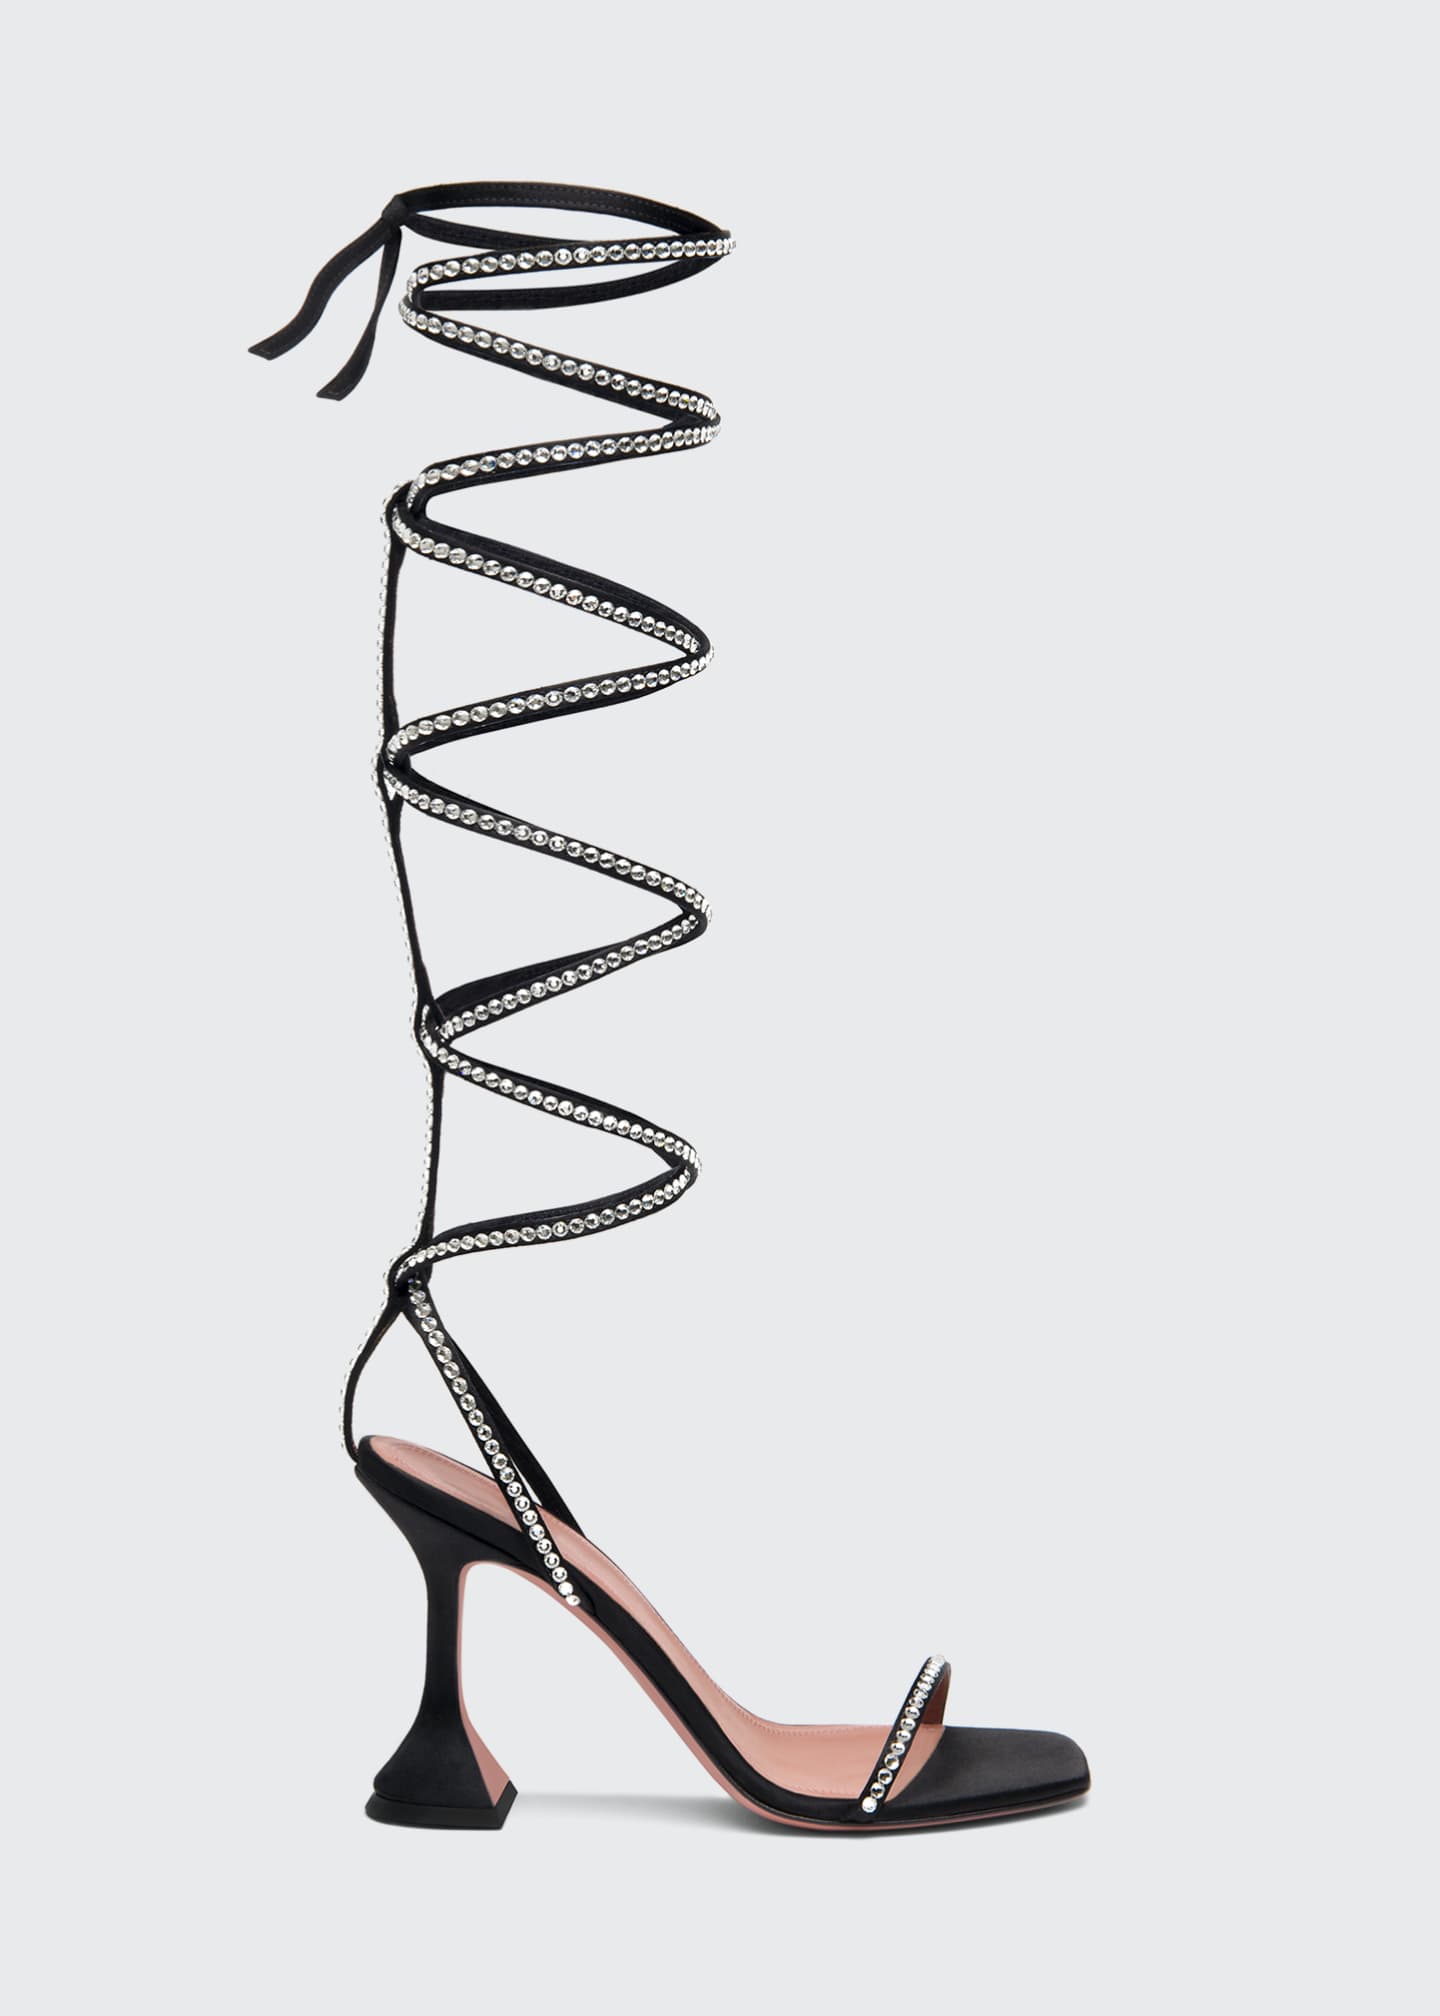 Amina Muaddi x AWGE LSD 95mm Gladiator Embellished Wraparound Sandals, Black | Bergdorf Goodman